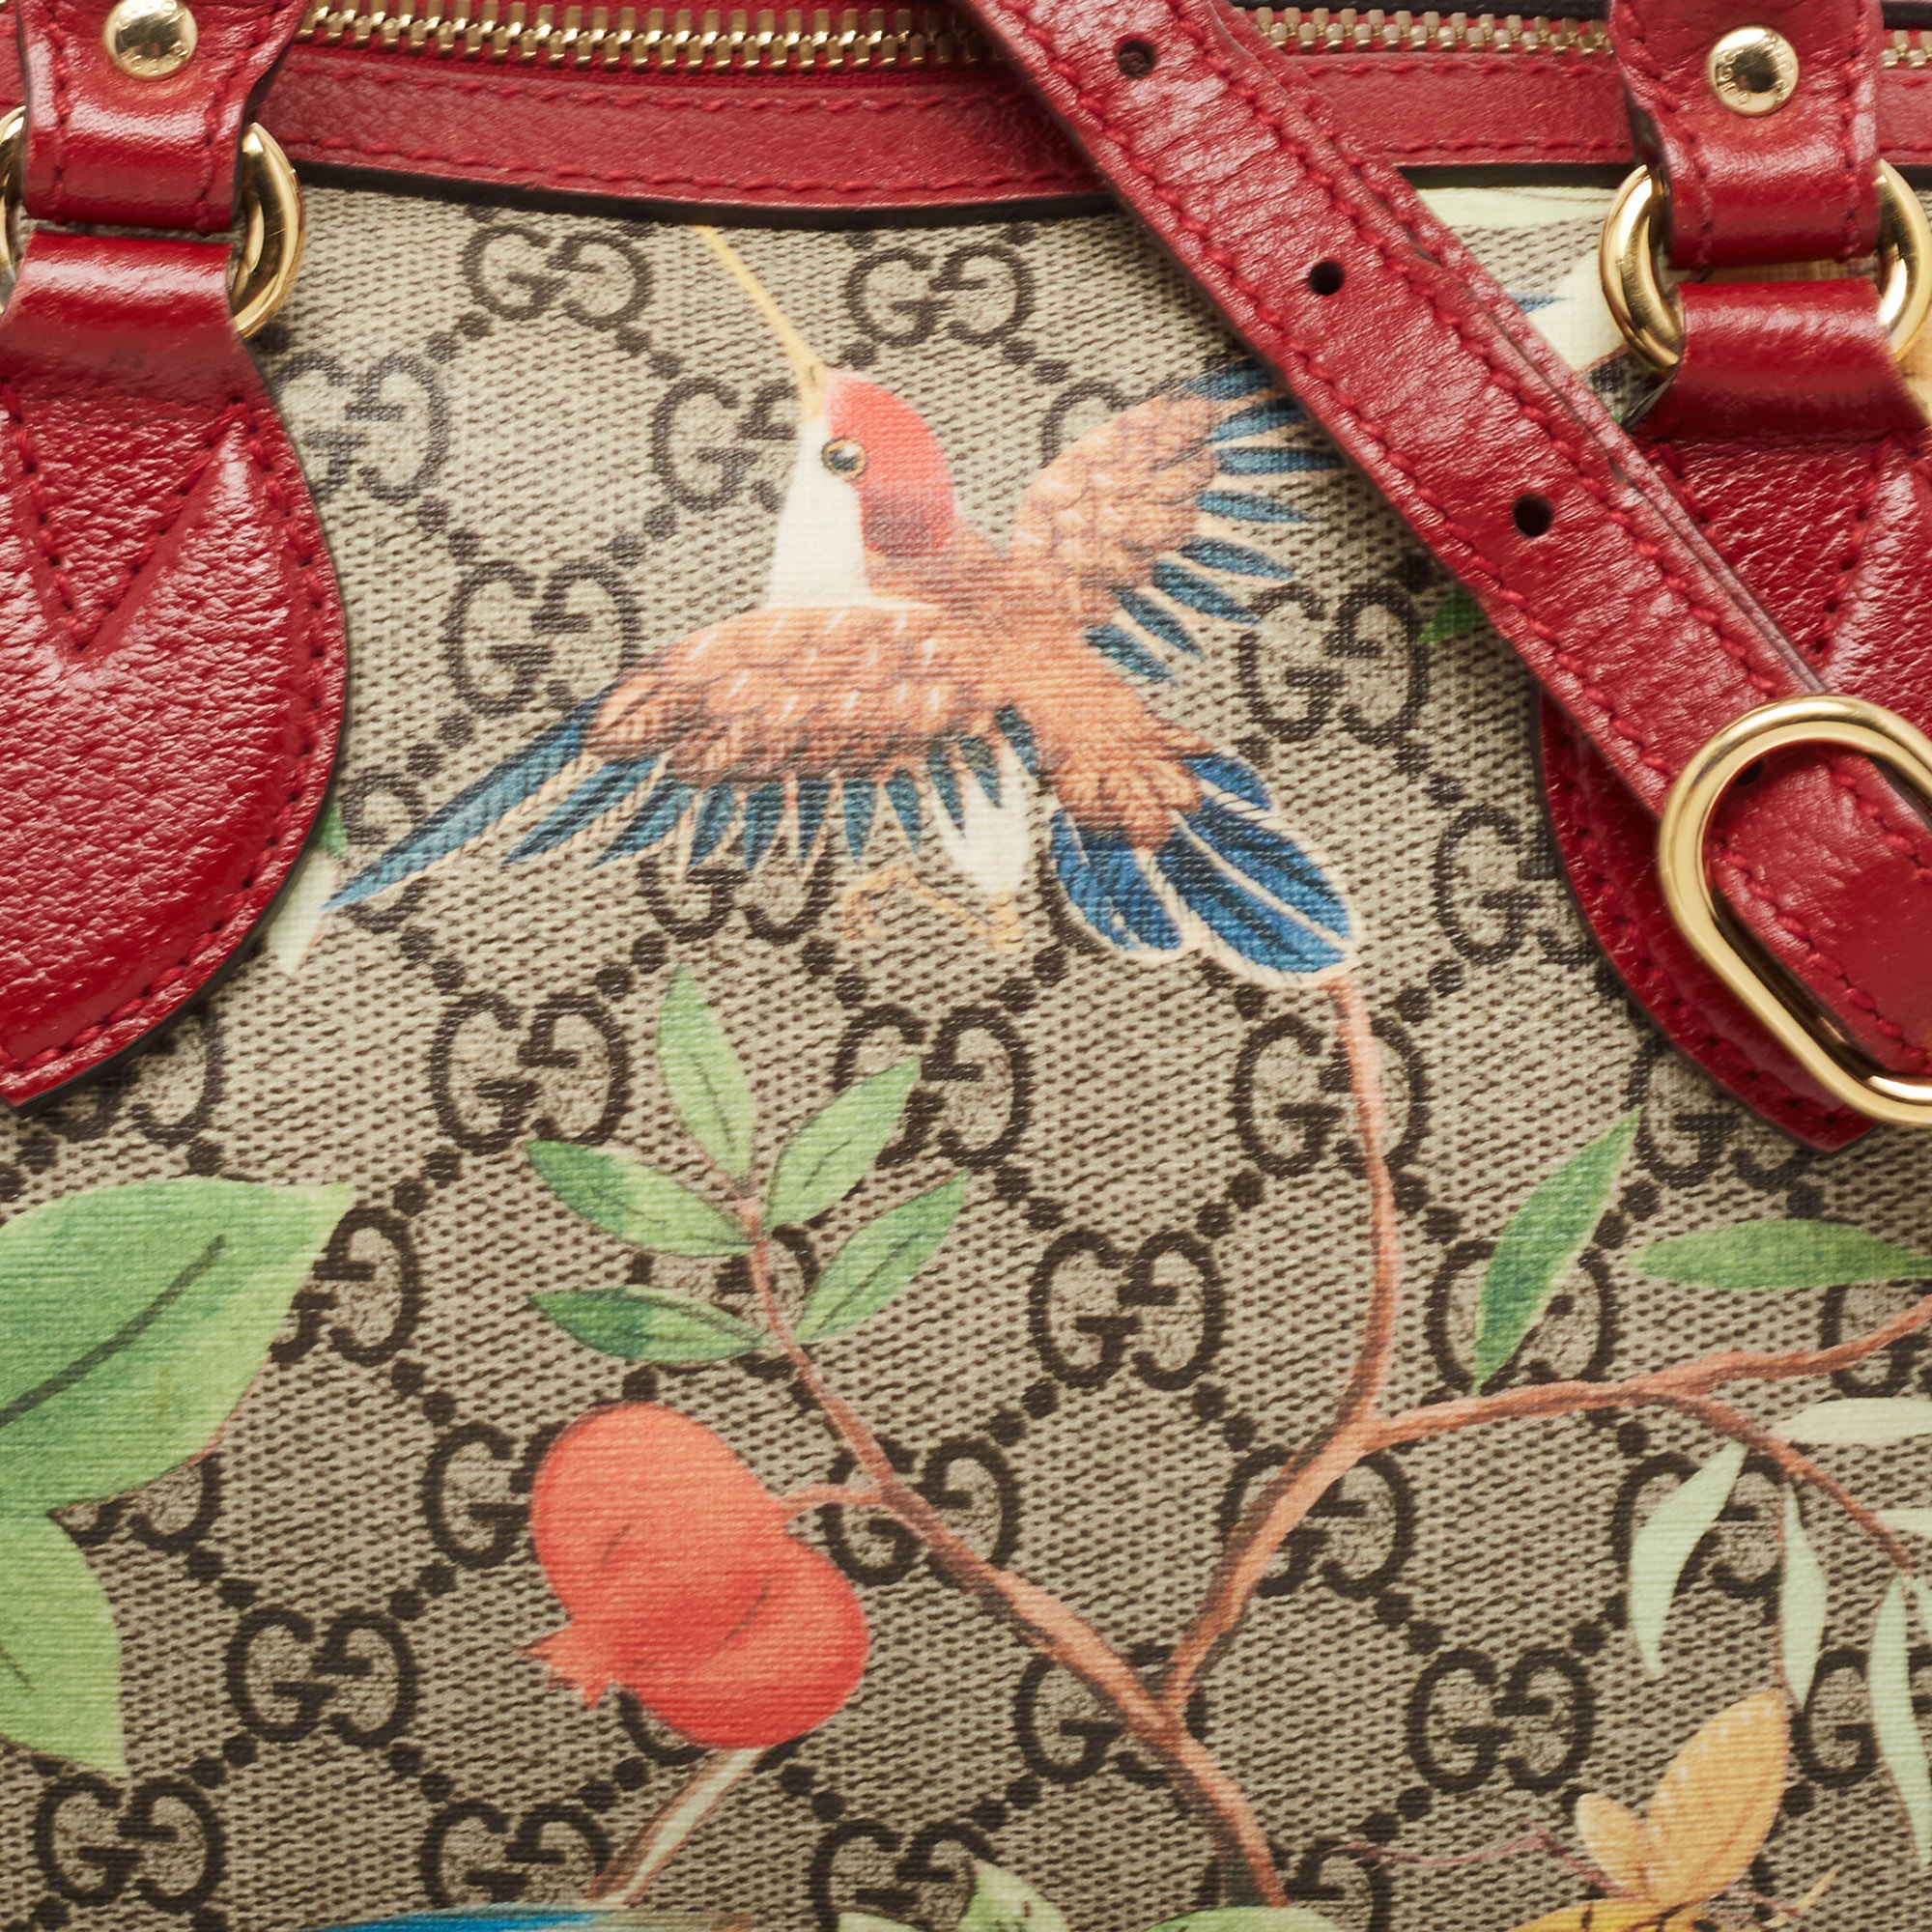 Gucci Multicolor GG Supreme Canvas And Leather Small Tian Boston Bag